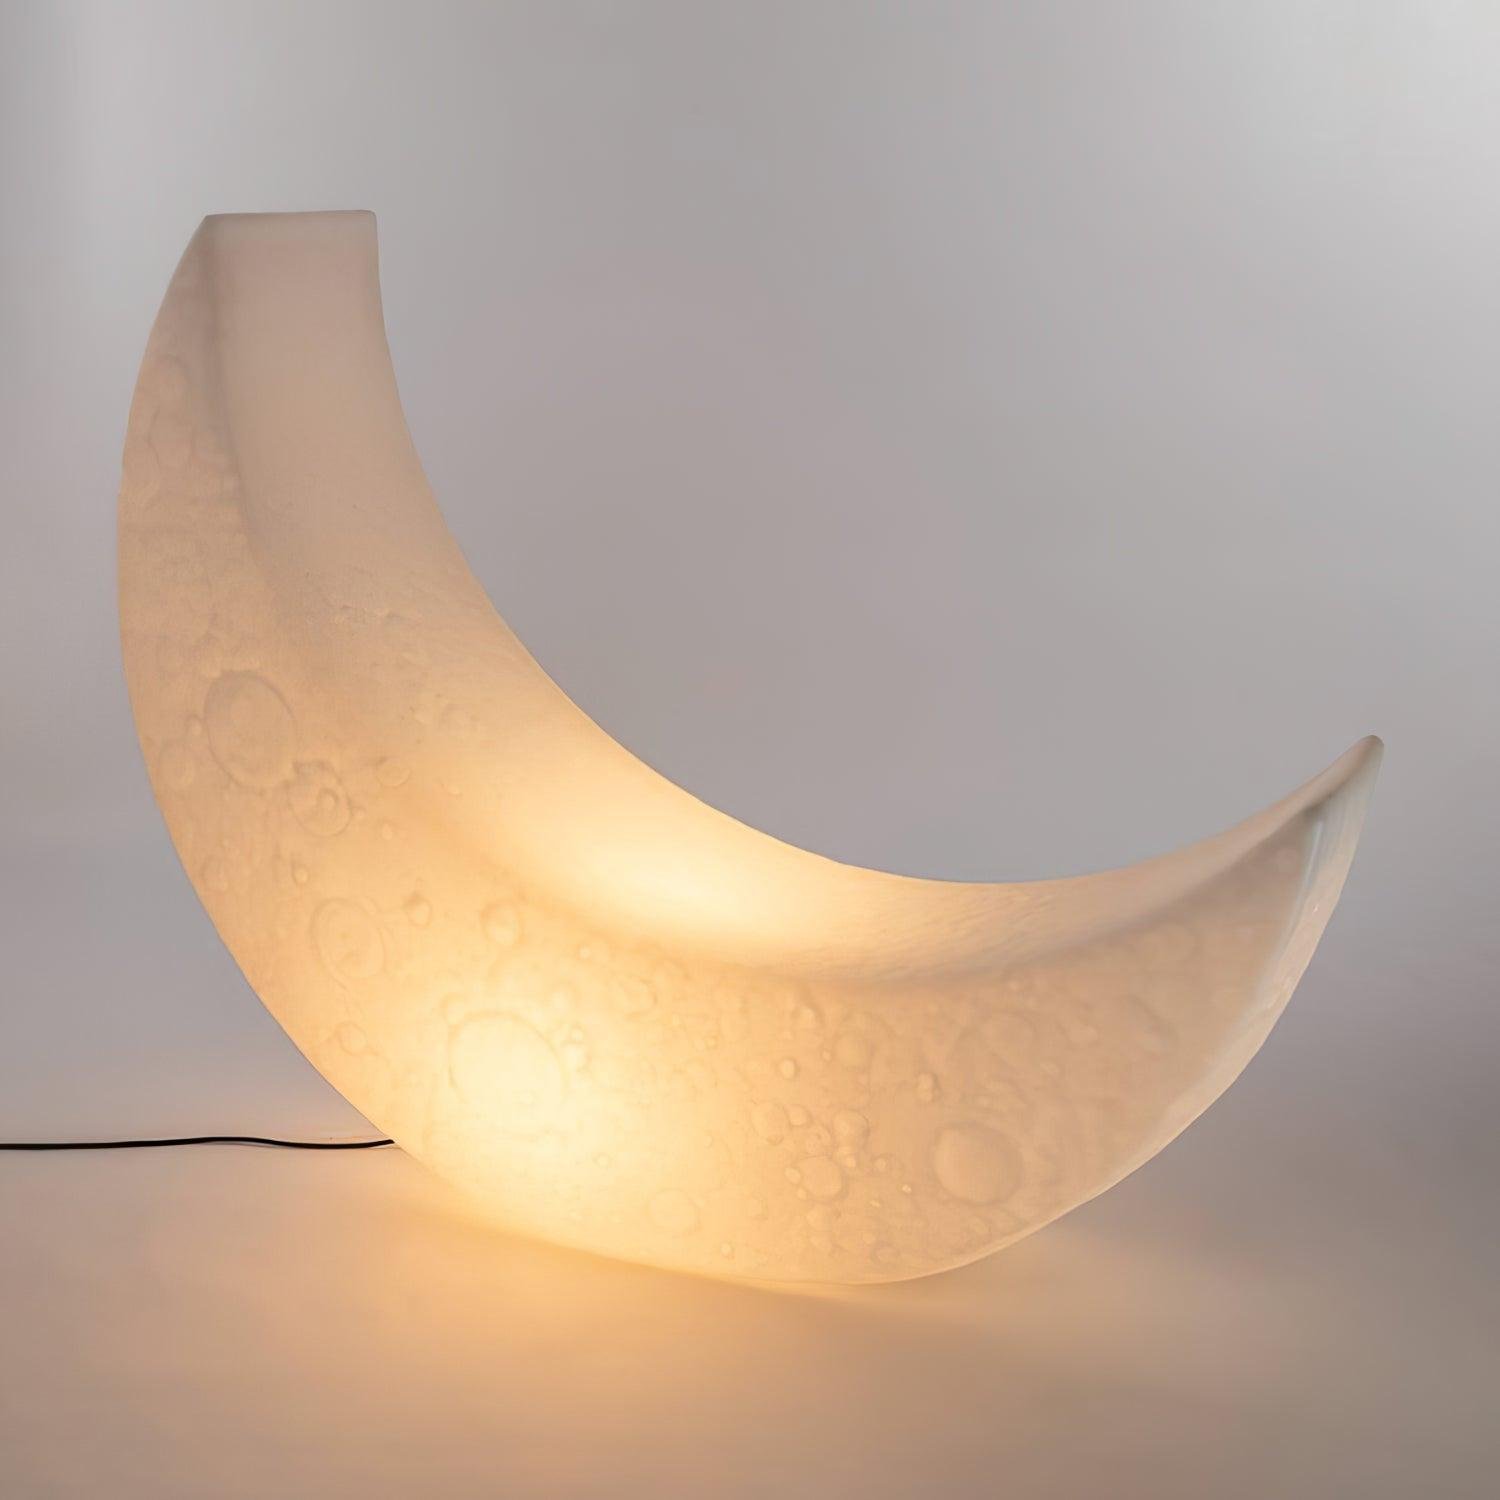 Moon Floor Lamp 59″ x 50″ (150cm x 127cm), White, with UK Plug